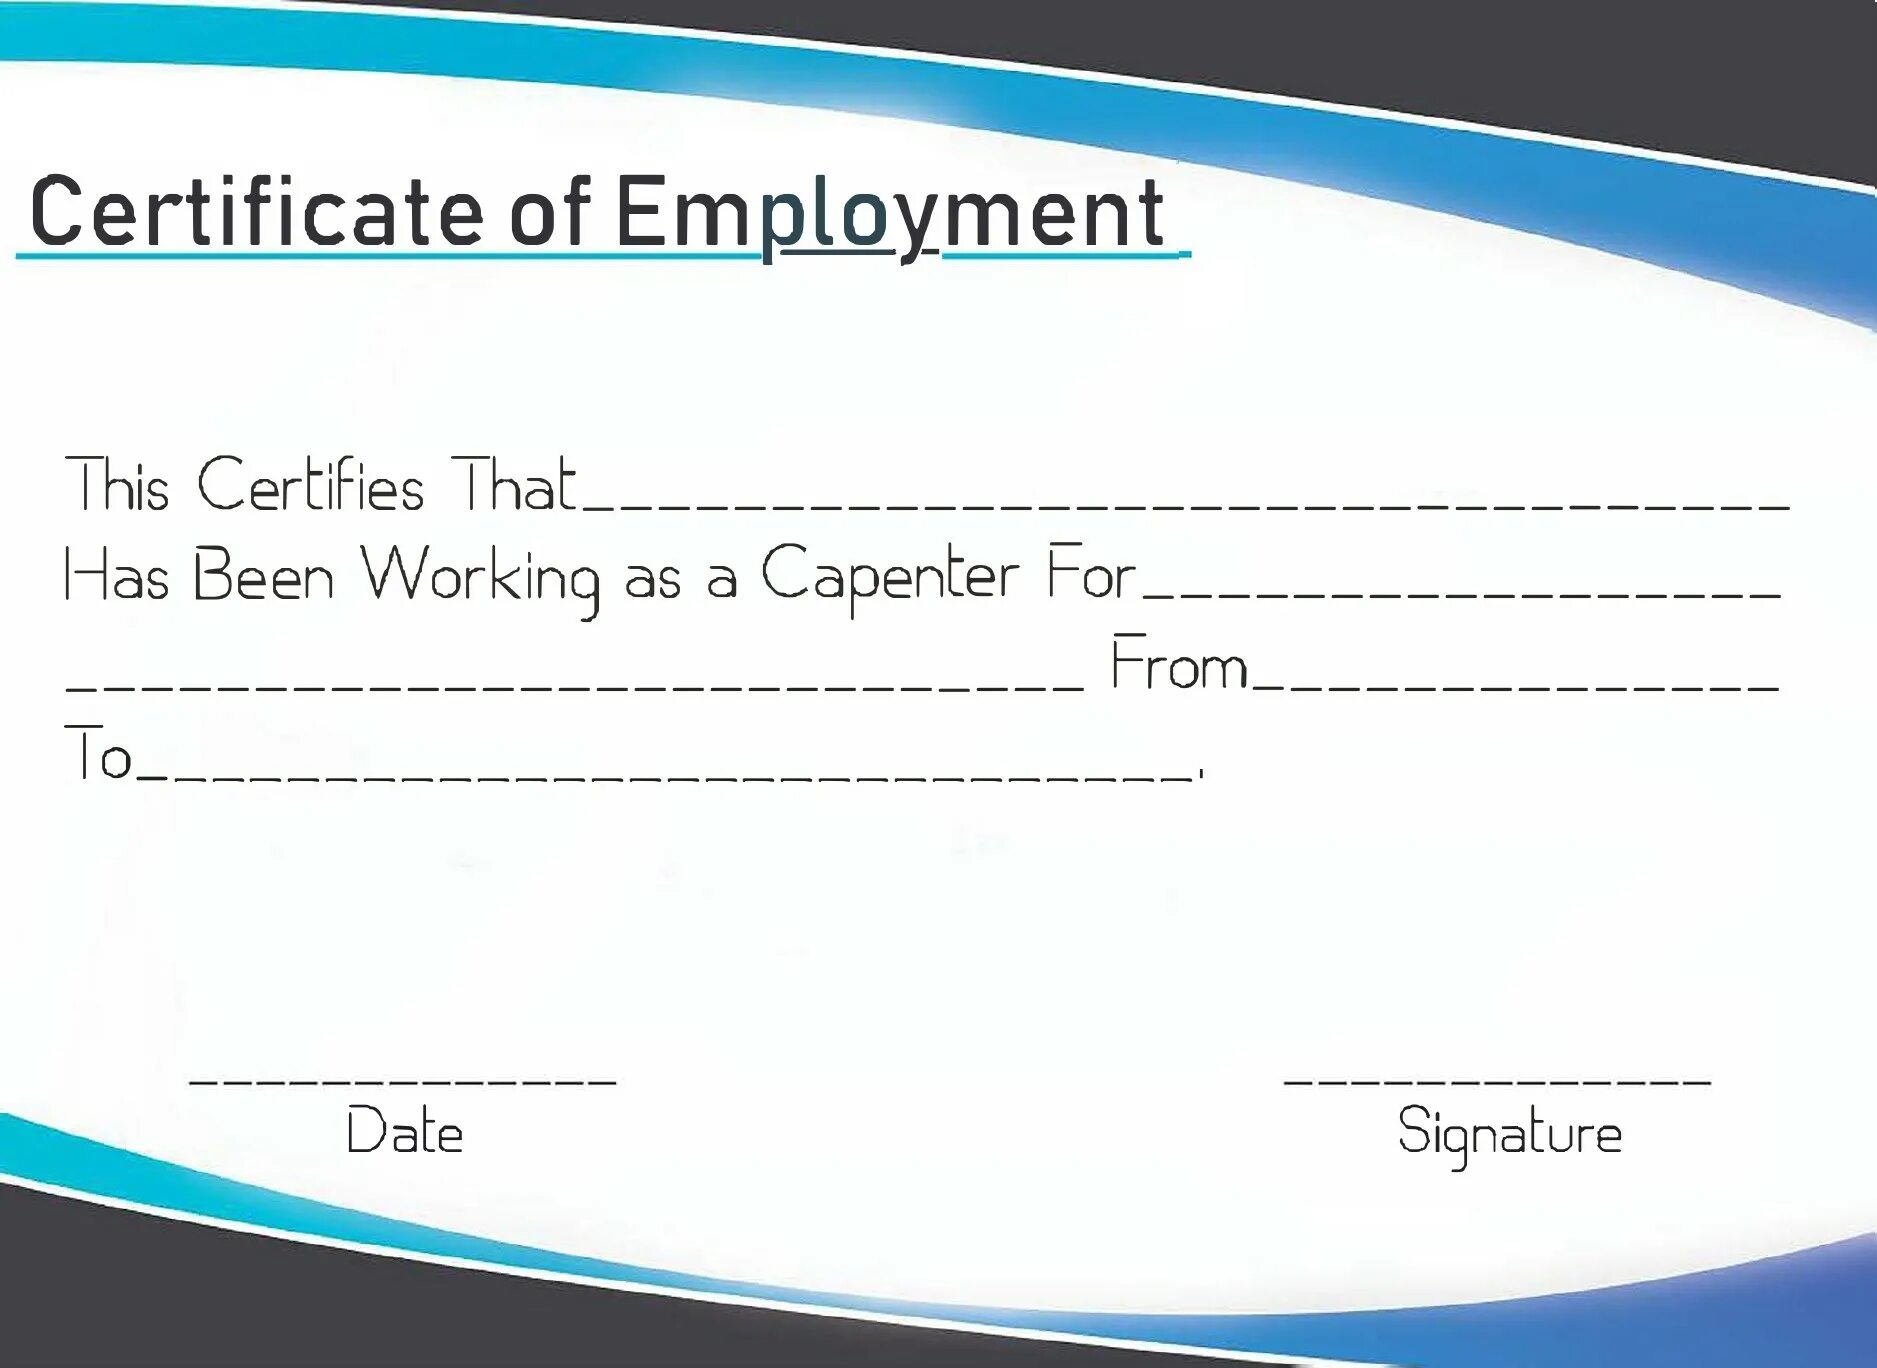 Certificate of Employment. Certificate of Employment Sample. Work Certificate. Employee Certificate.